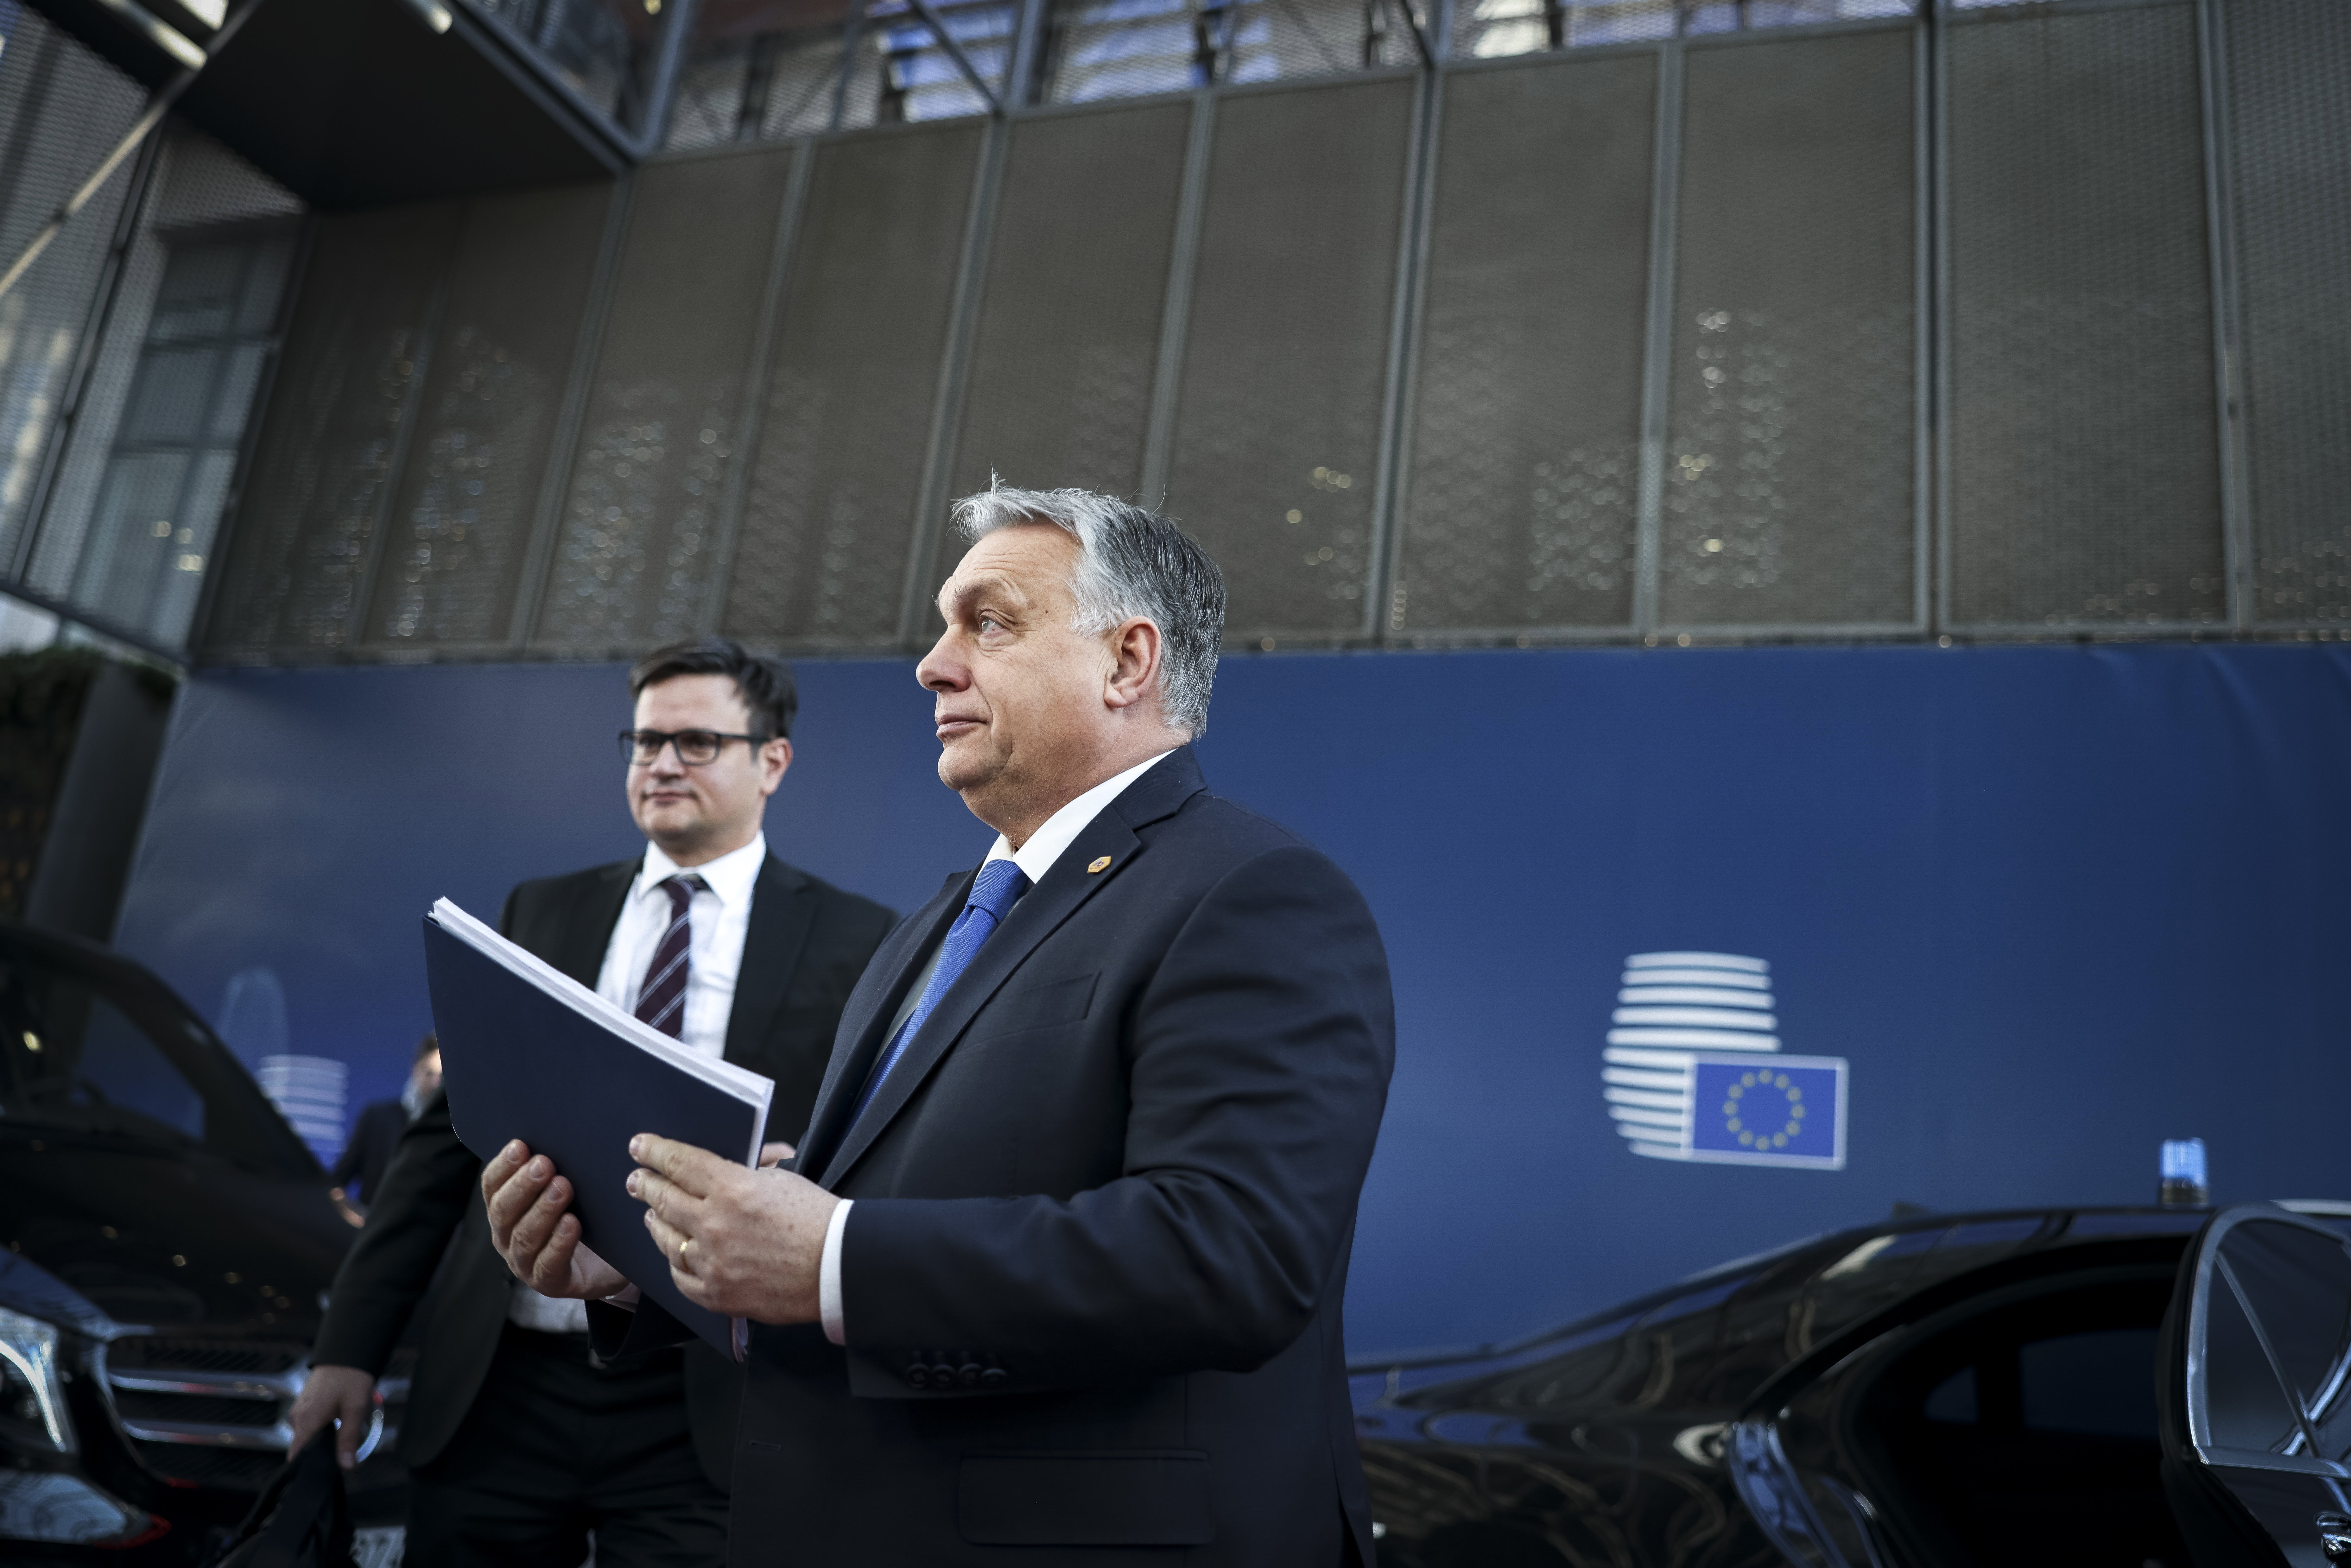 Az Európai Bizottság ismét pert indít Magyarország ellen